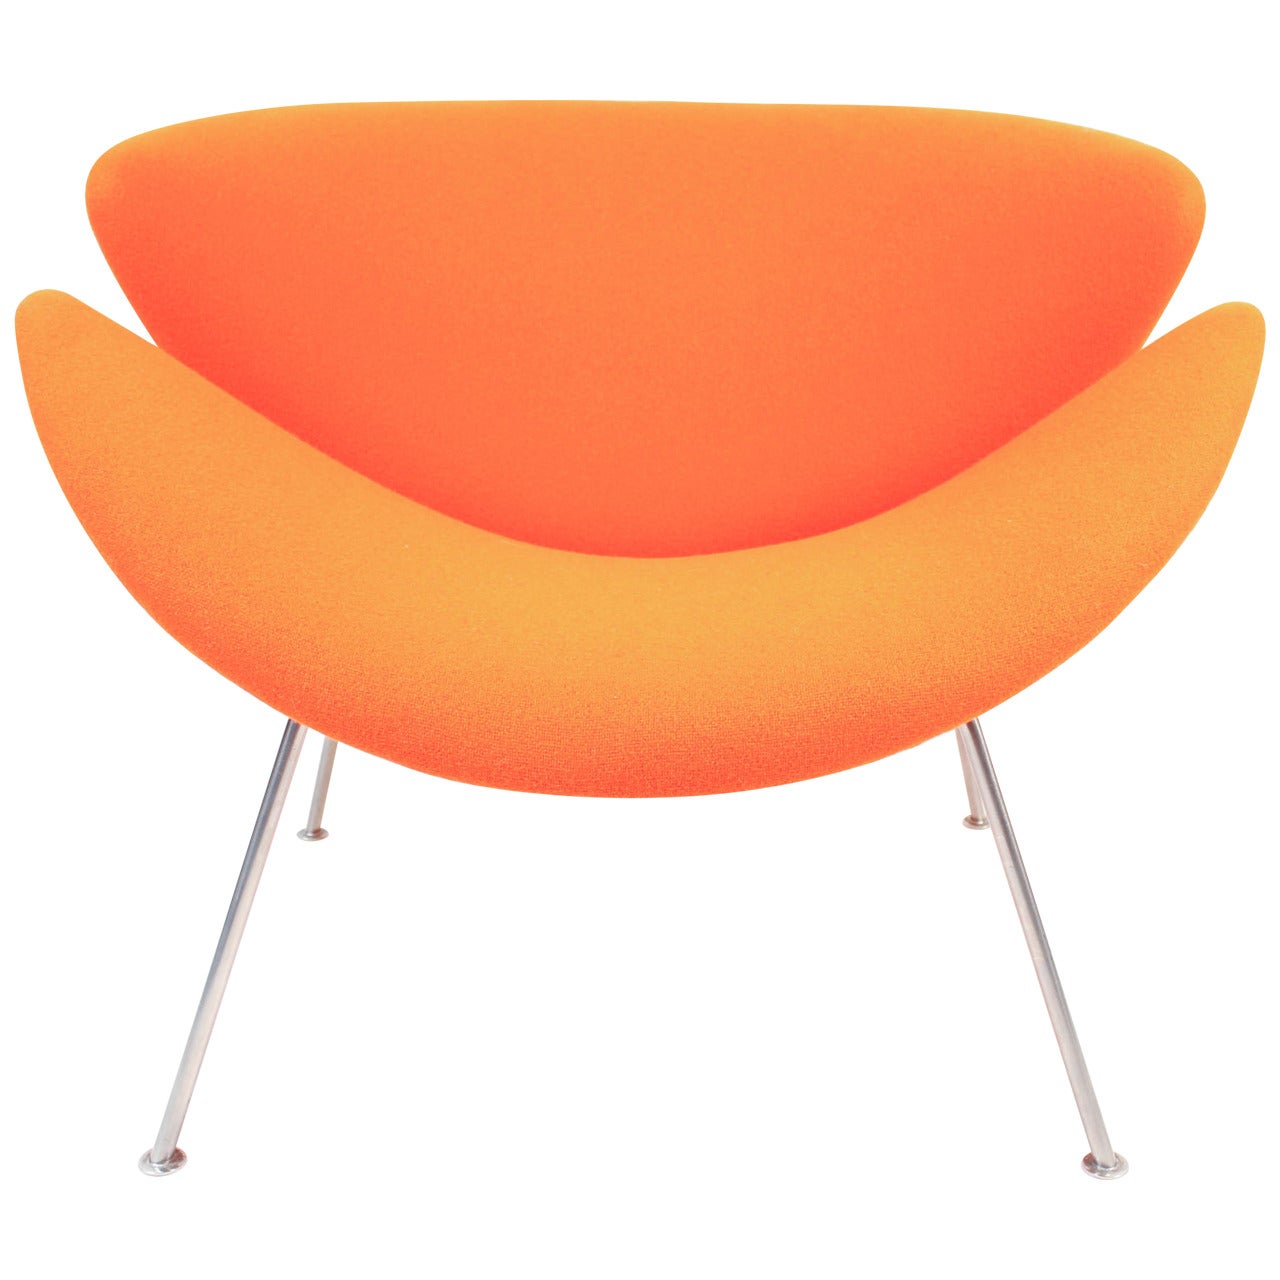 Vintage F437 Orange Slice Chair by Pierre Paulin for Artifort, 1960